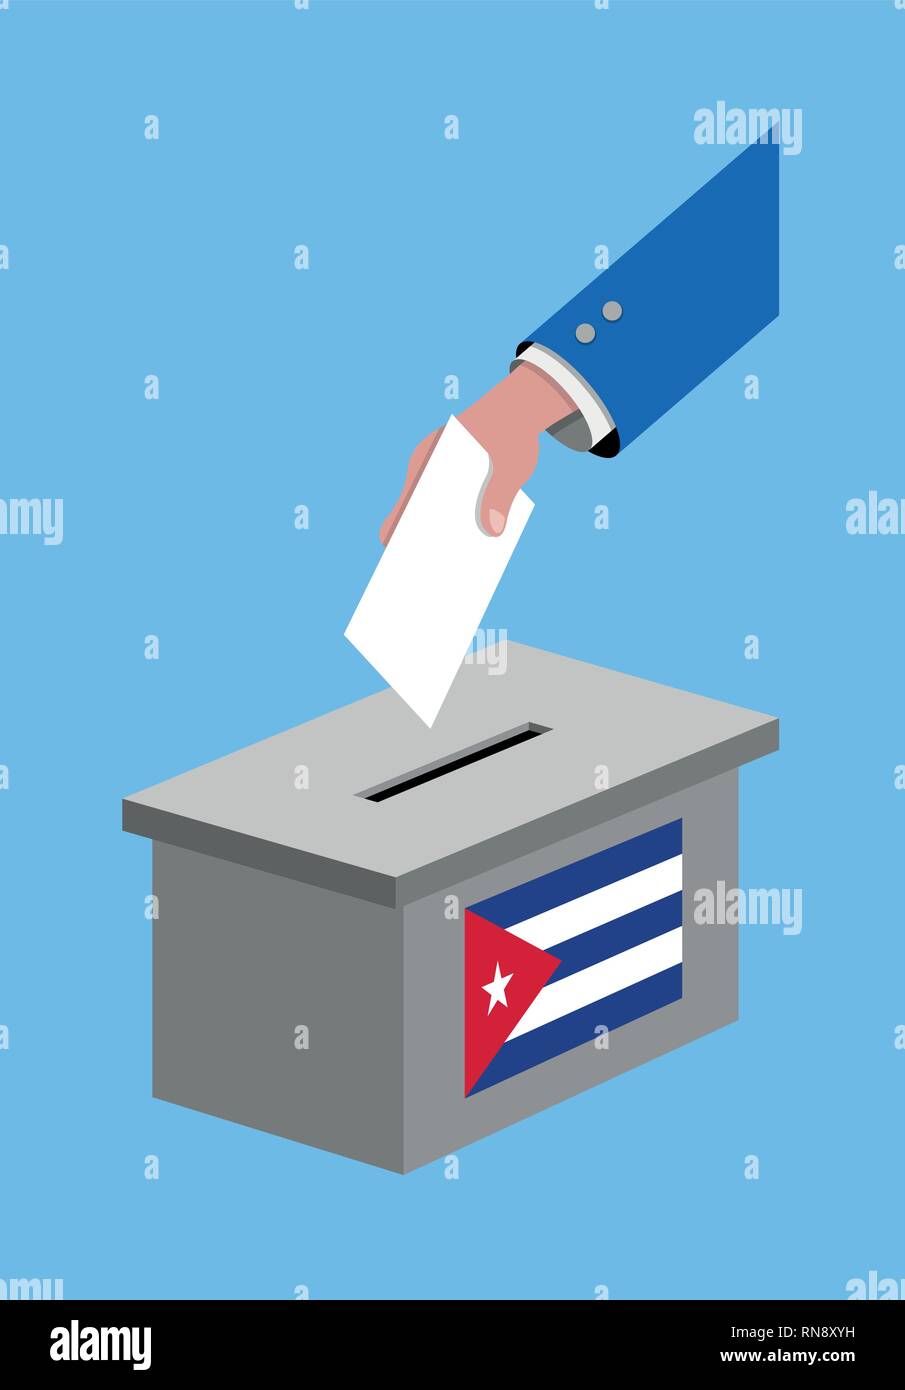 Votación para la elección con votación cubana y Cuba bandera. Toda la silueta de los objetos y el Fondo están en capas distintas. Ilustración del Vector